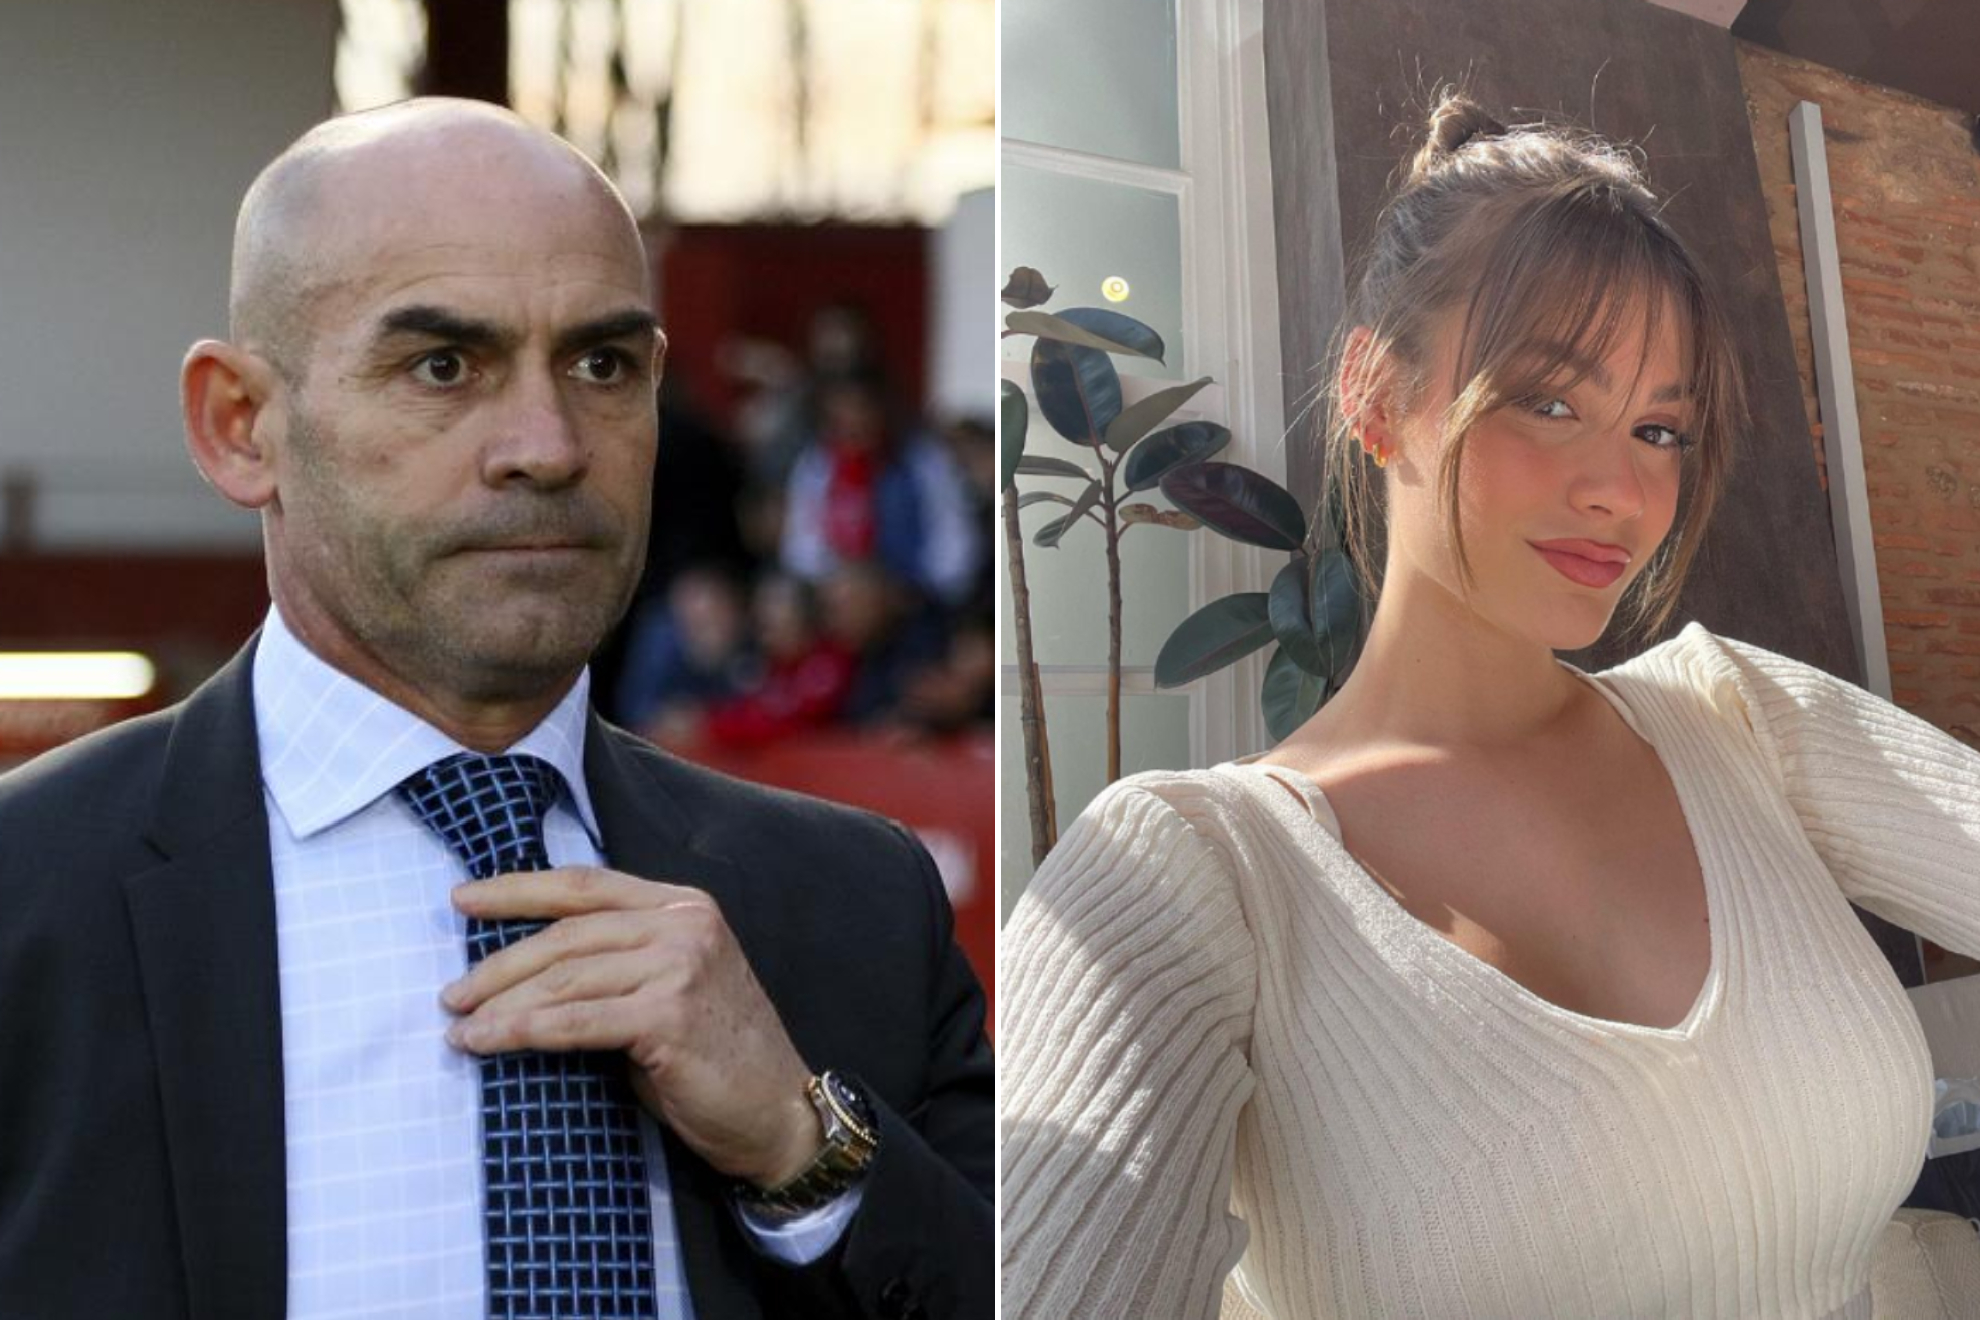 El consejo de Paco Jmez a su hija sobre los futbolistas: Los conoce mucho